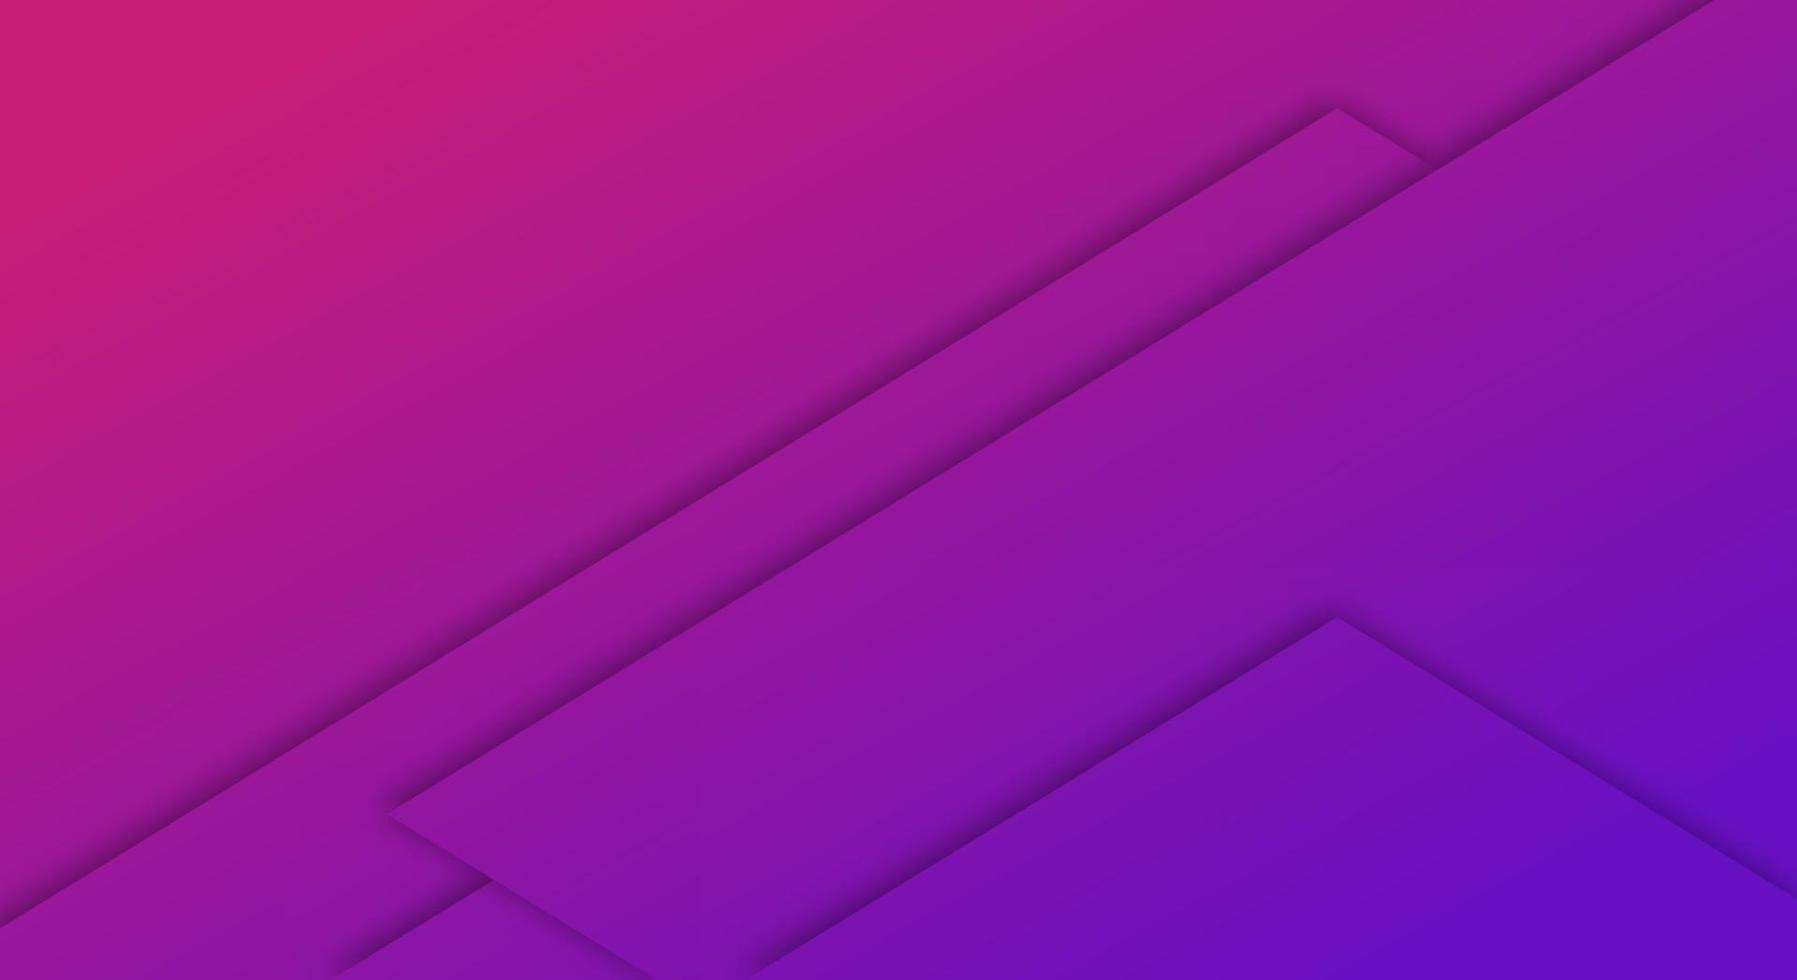 estilo de corte de papel geométrico de fondo degradado púrpura y rosa abstracto para folletos o plantilla de páginas de destino vector